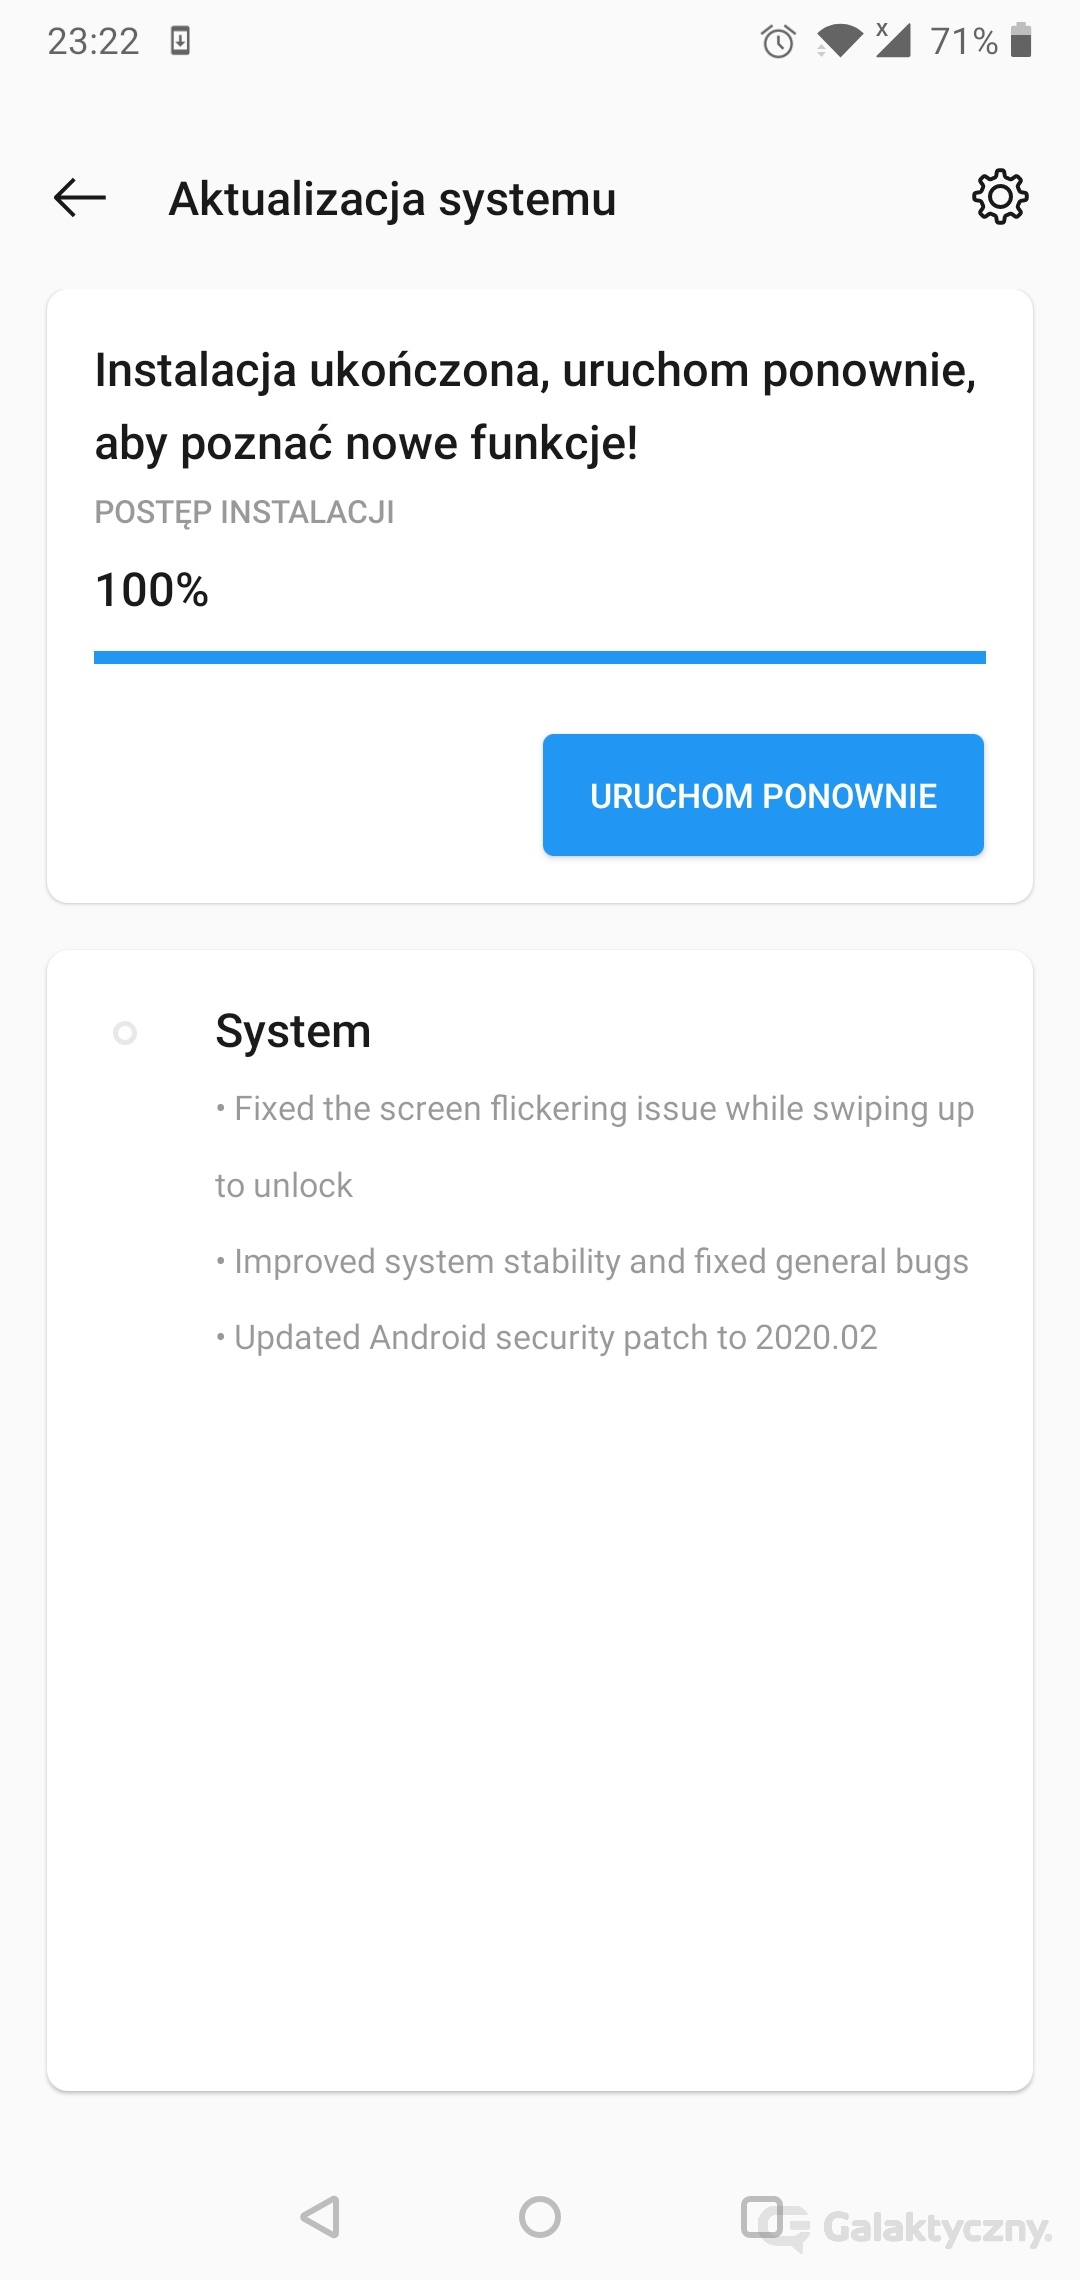 OnePlus 6 - aktualizacja z poprawkami 02.2020